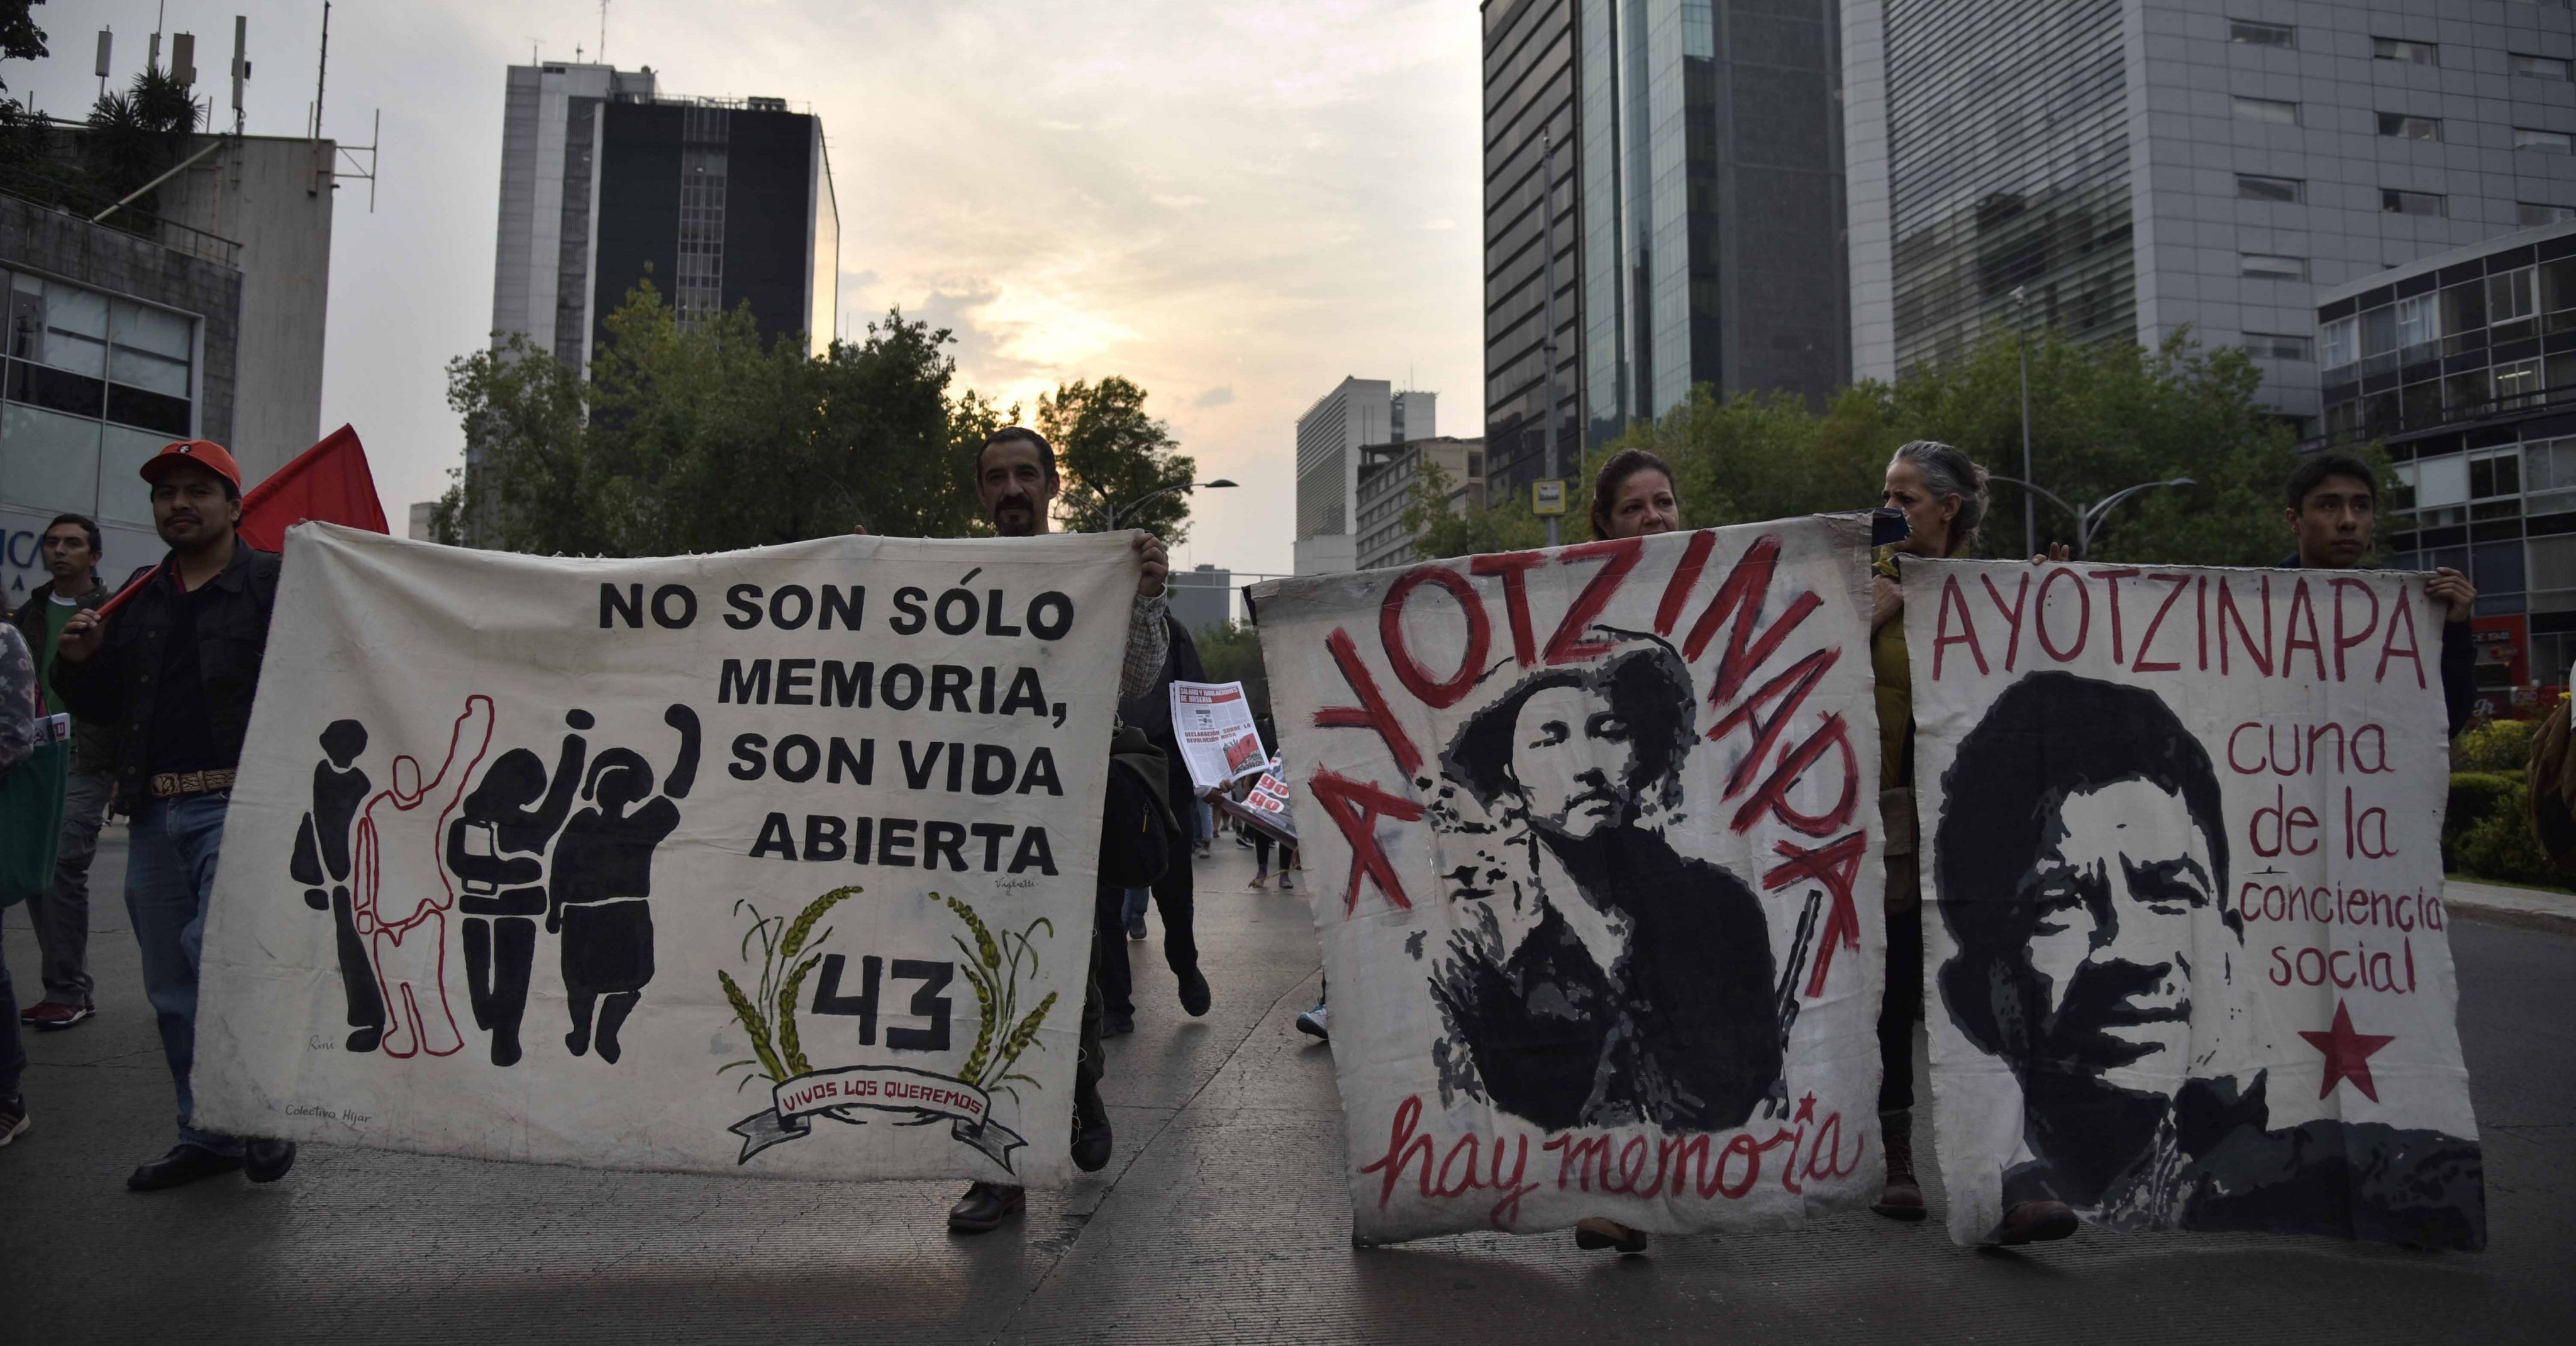 Autoridades y criminales, vinculados en caso Ayotzinapa: CNDH